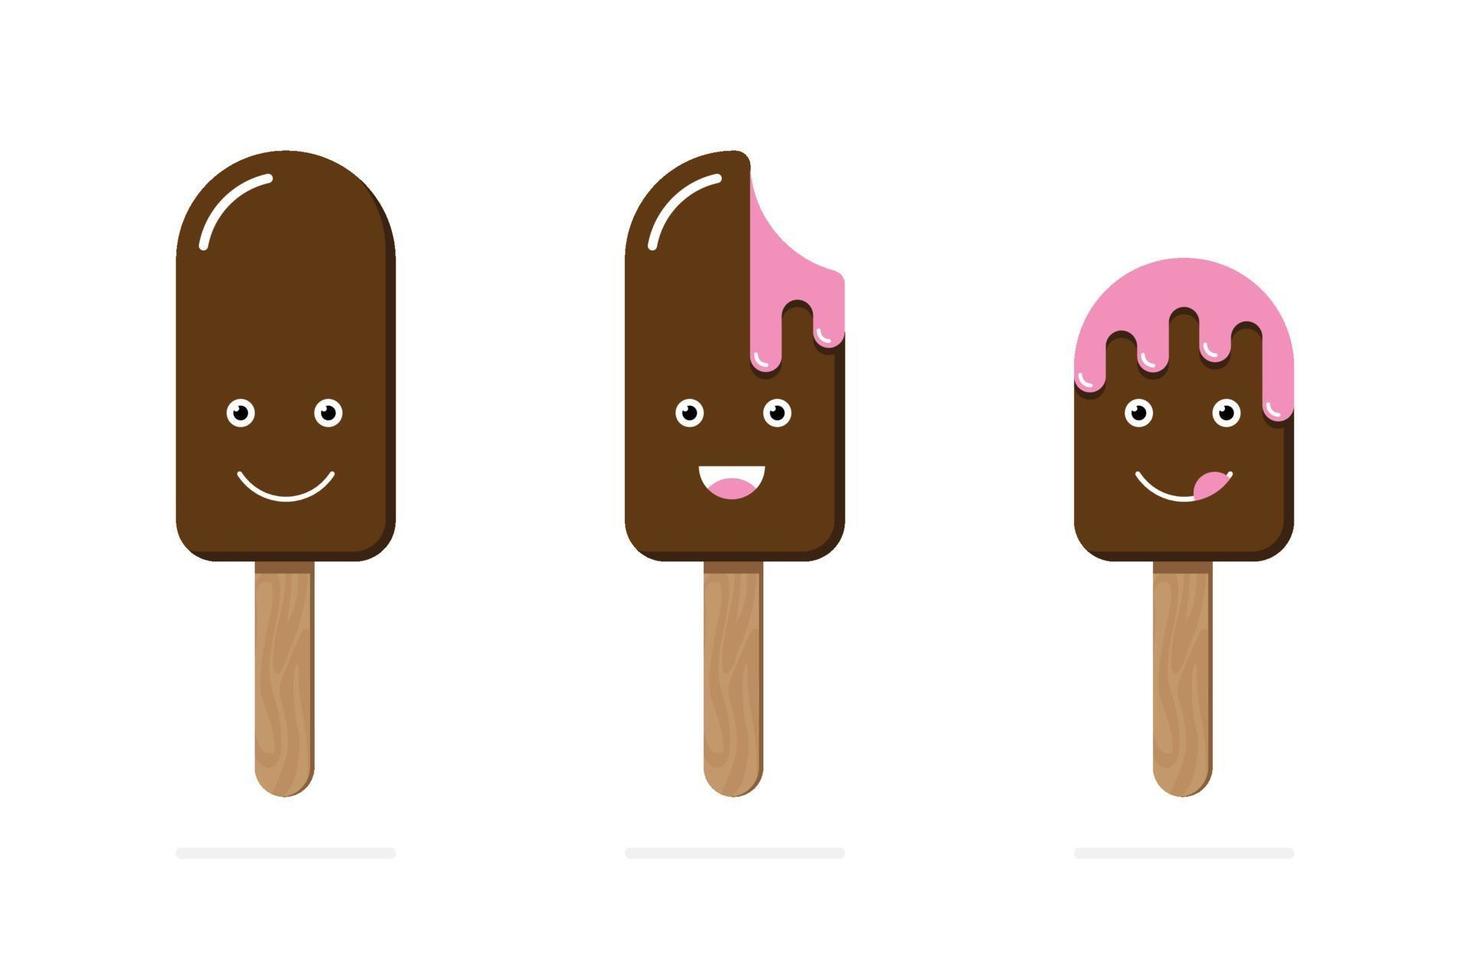 helado en palo de madera glaseado de chocolate relleno de rosa diferente emoción cara conjunto de emoji sonrisa graciosa risa lamiendo labios derritiéndose. ilustración vectorial estilo de dibujos animados fondo blanco vector